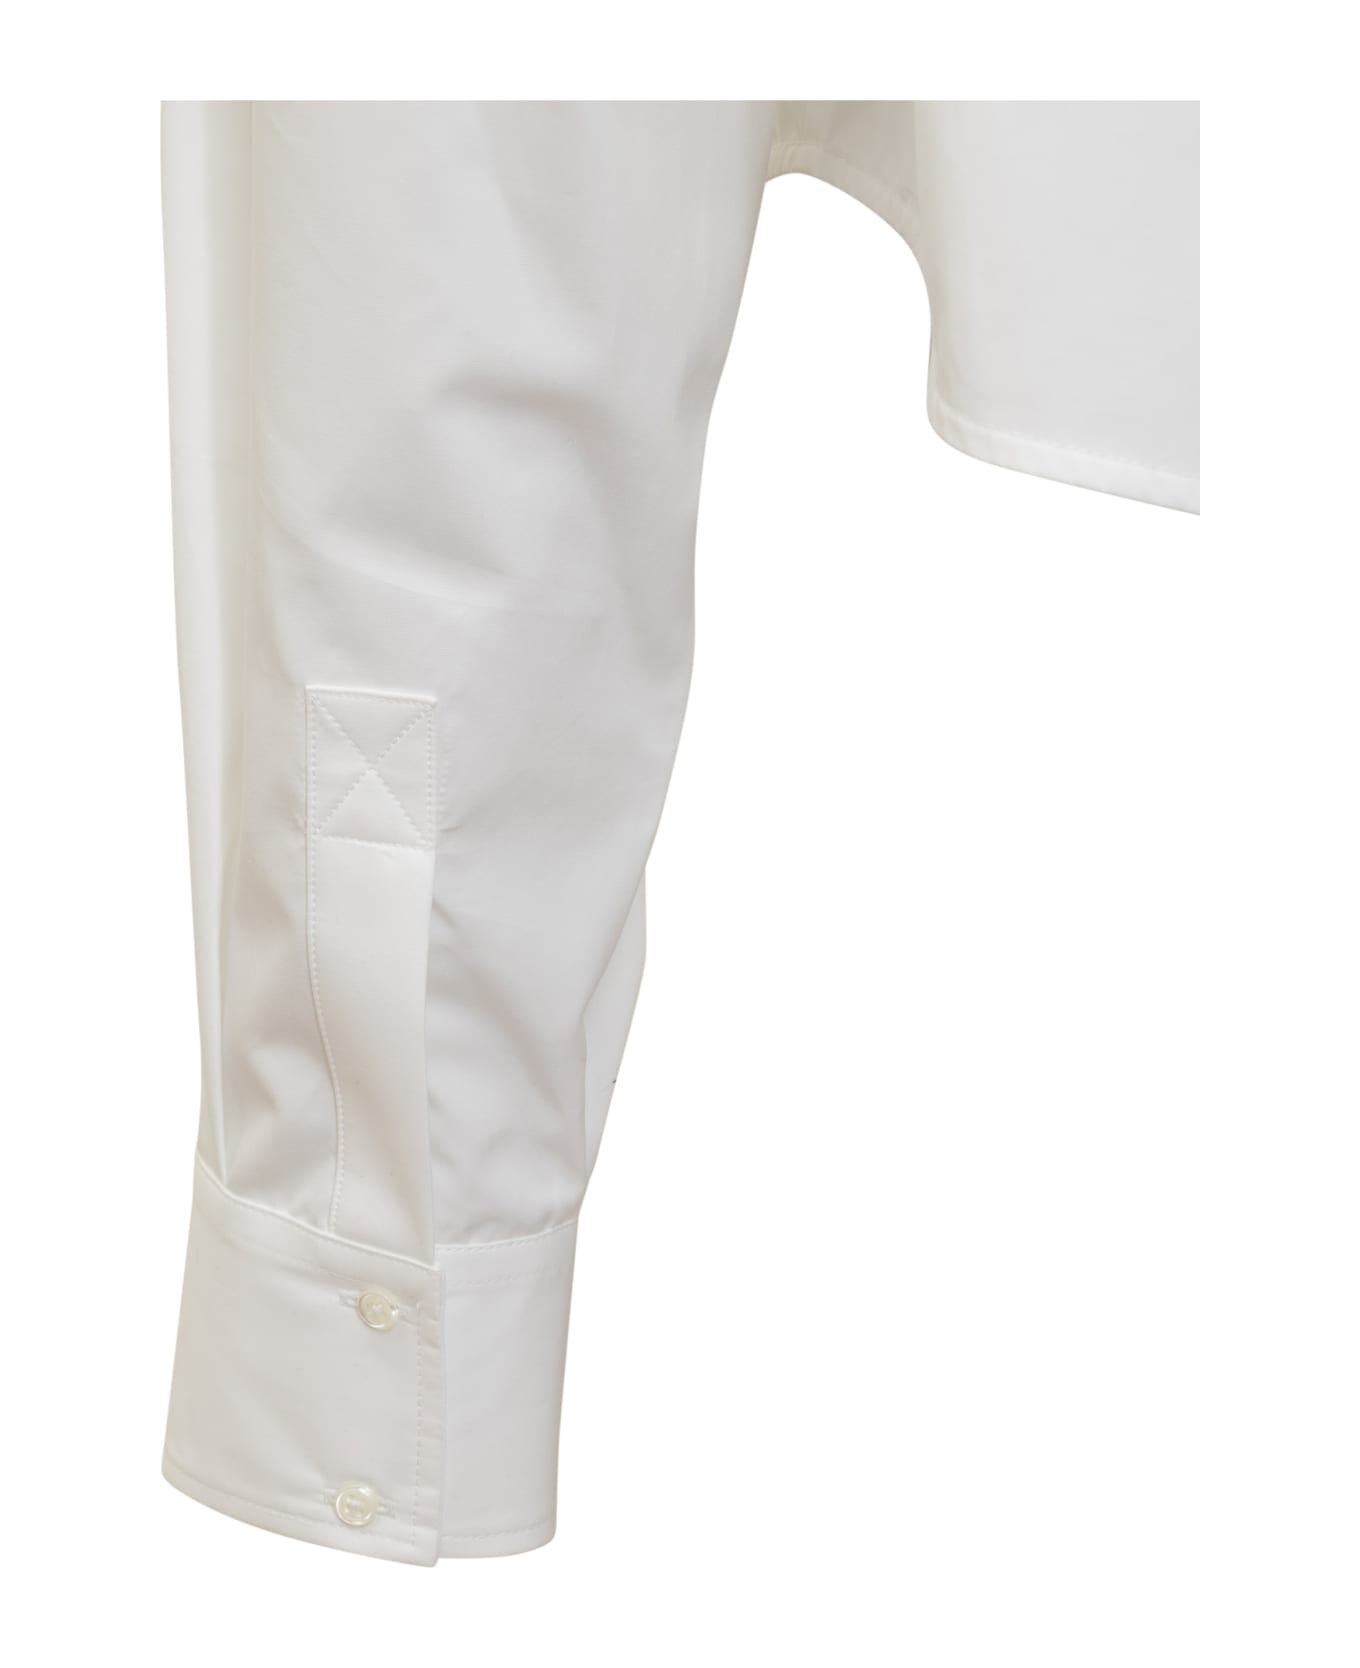 Off-White Poplin Bookish Baseball Shirt - WHITE シャツ